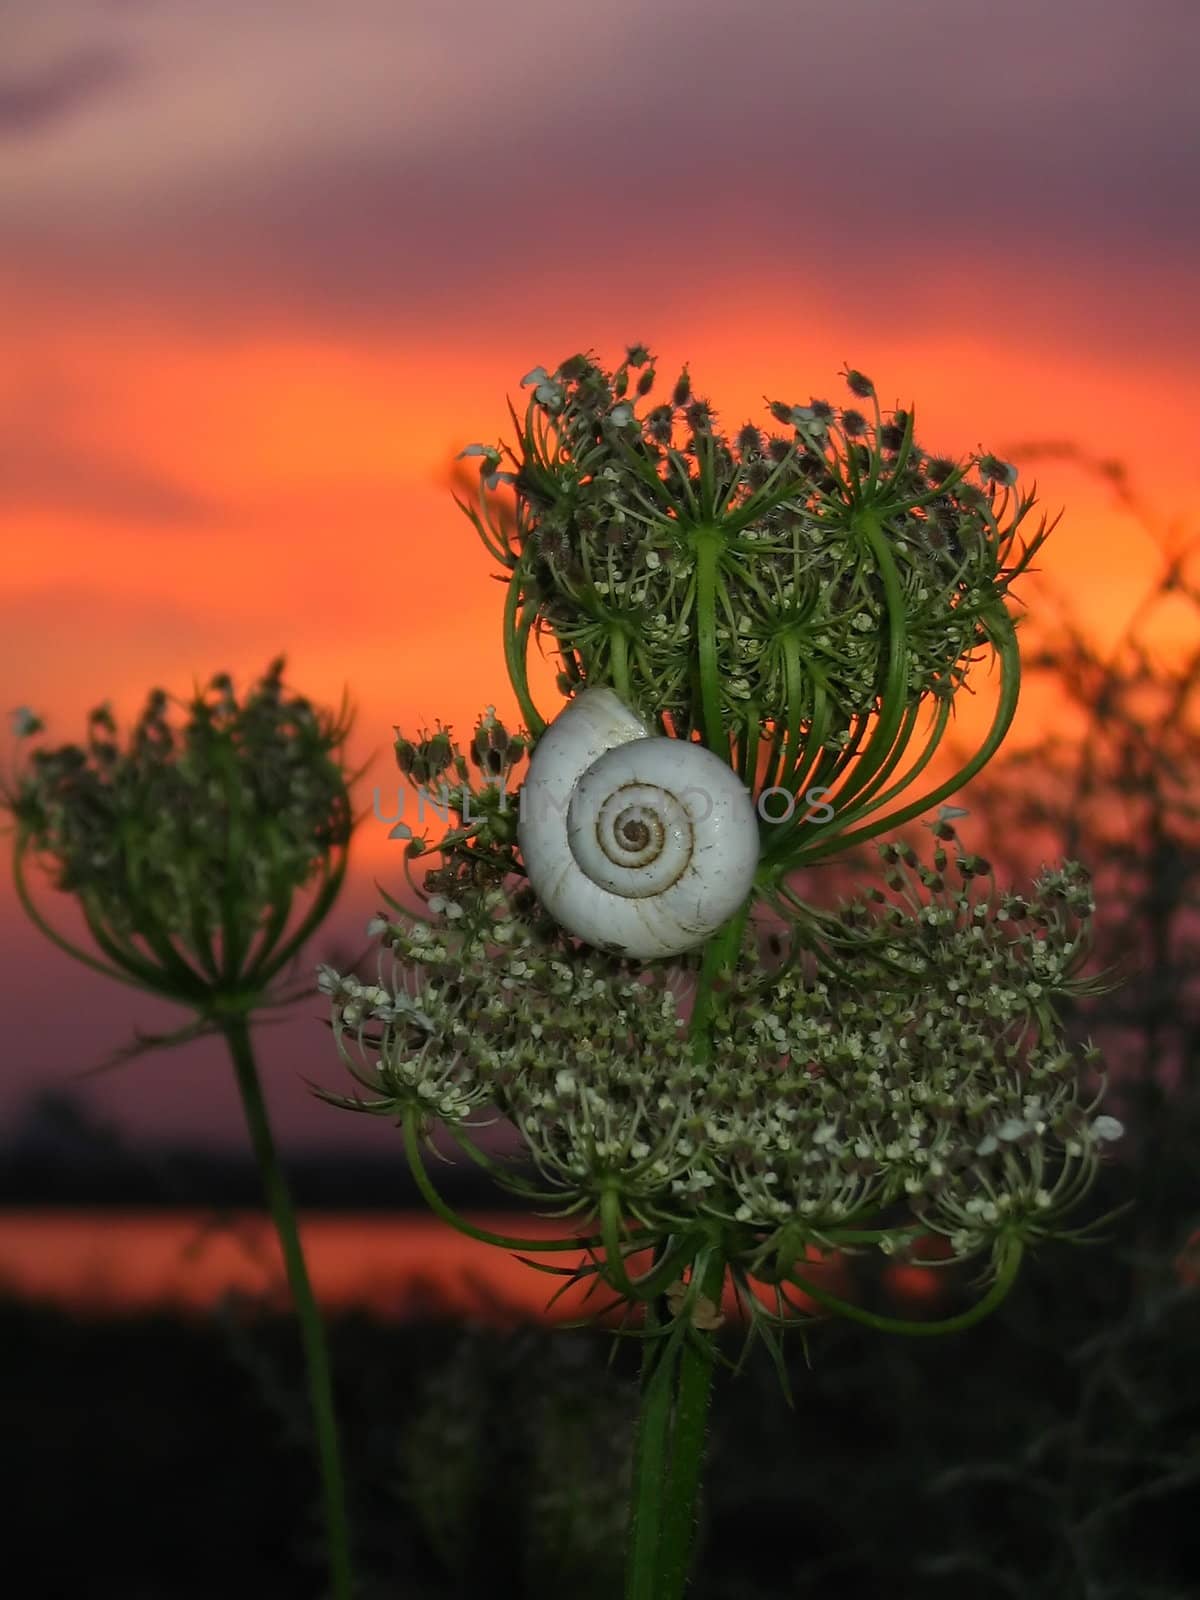 Snail on sundown